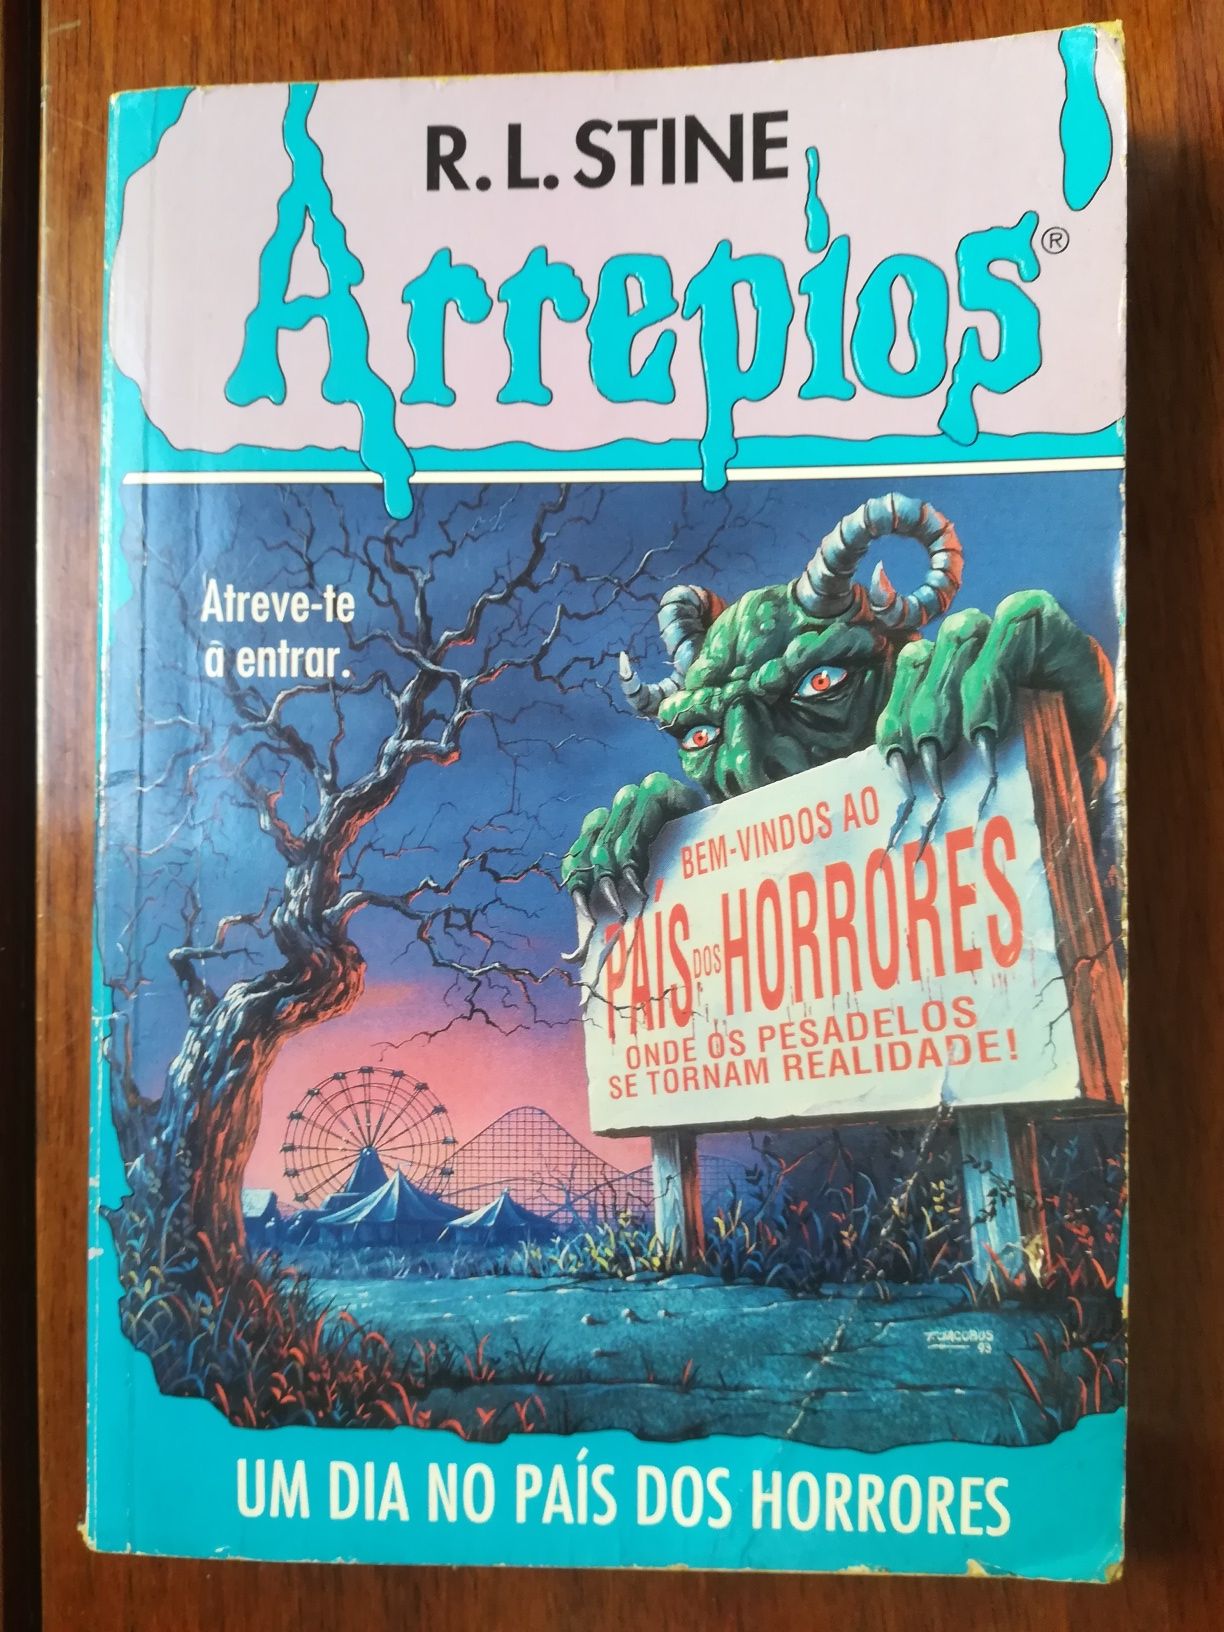 Livros da coleção "Arrepios"